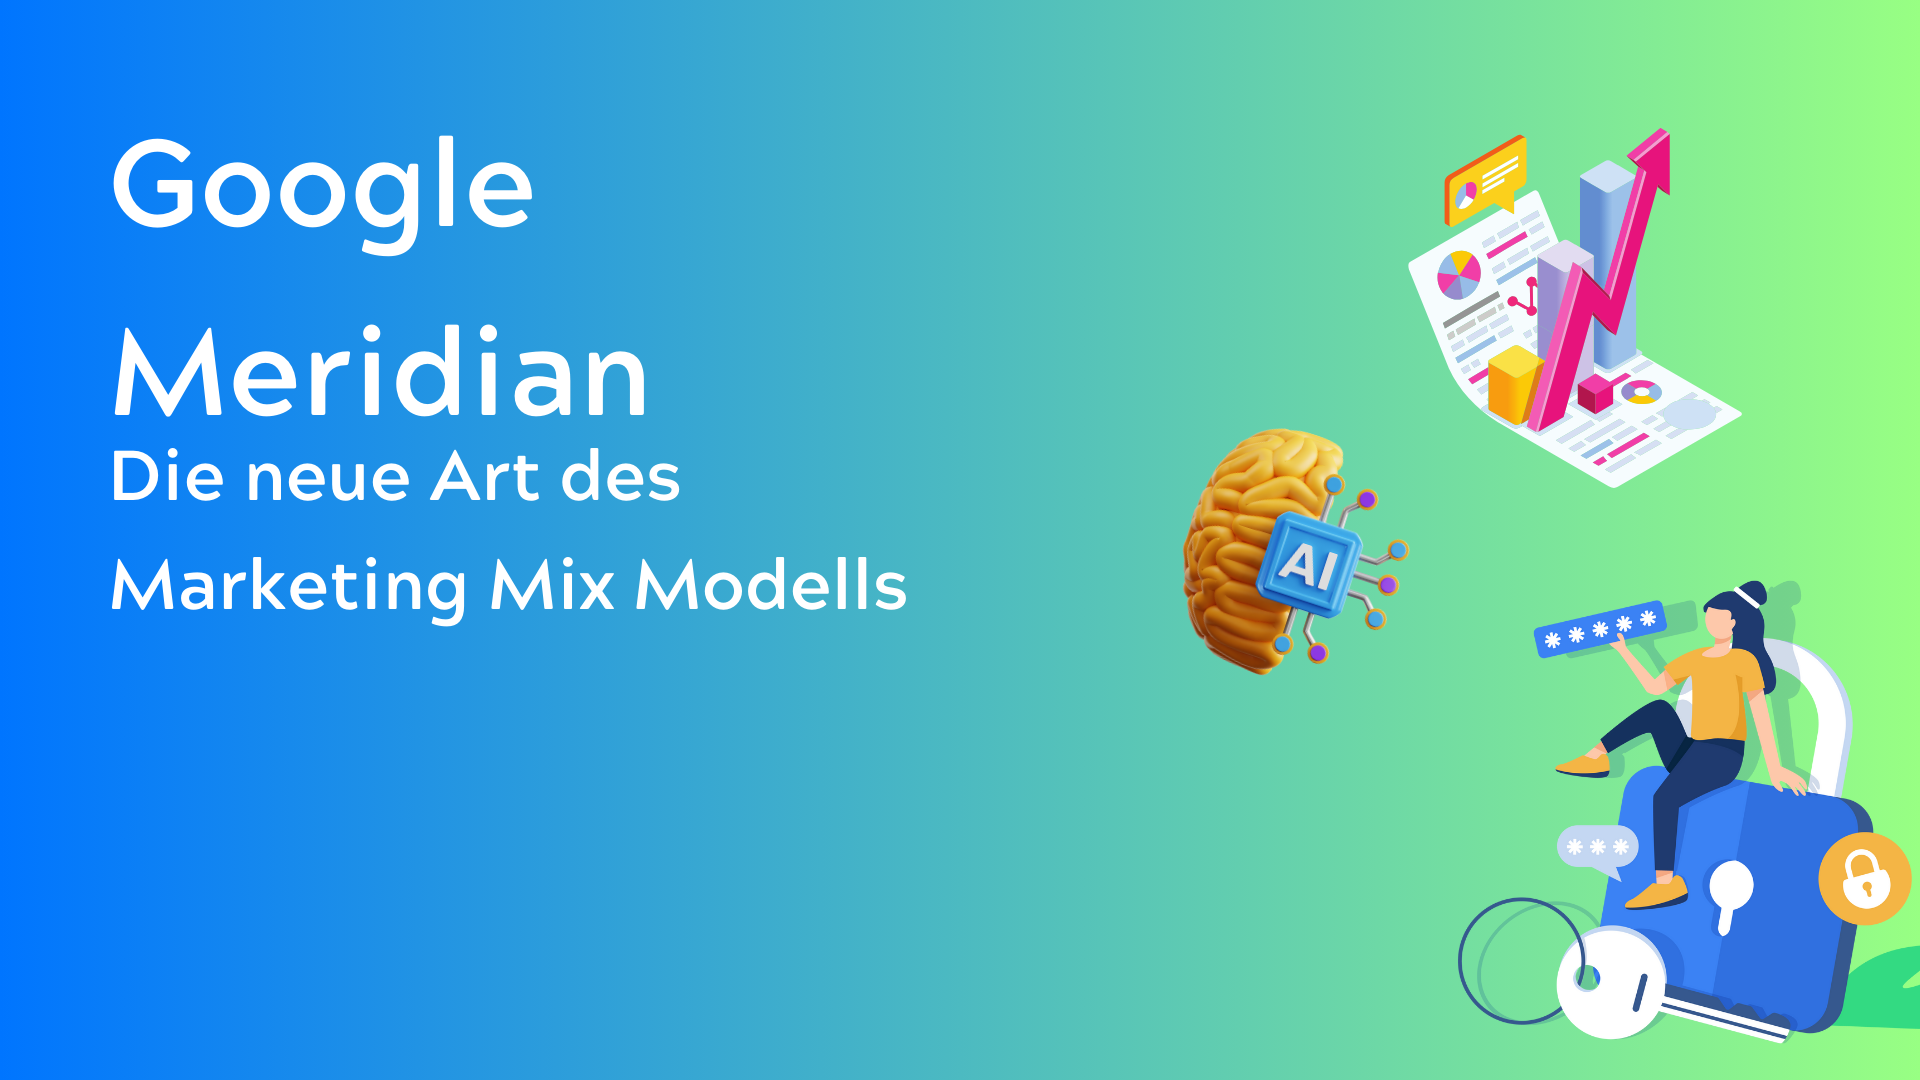 Google Meridian Die neue Art des Marketing Mix Modells